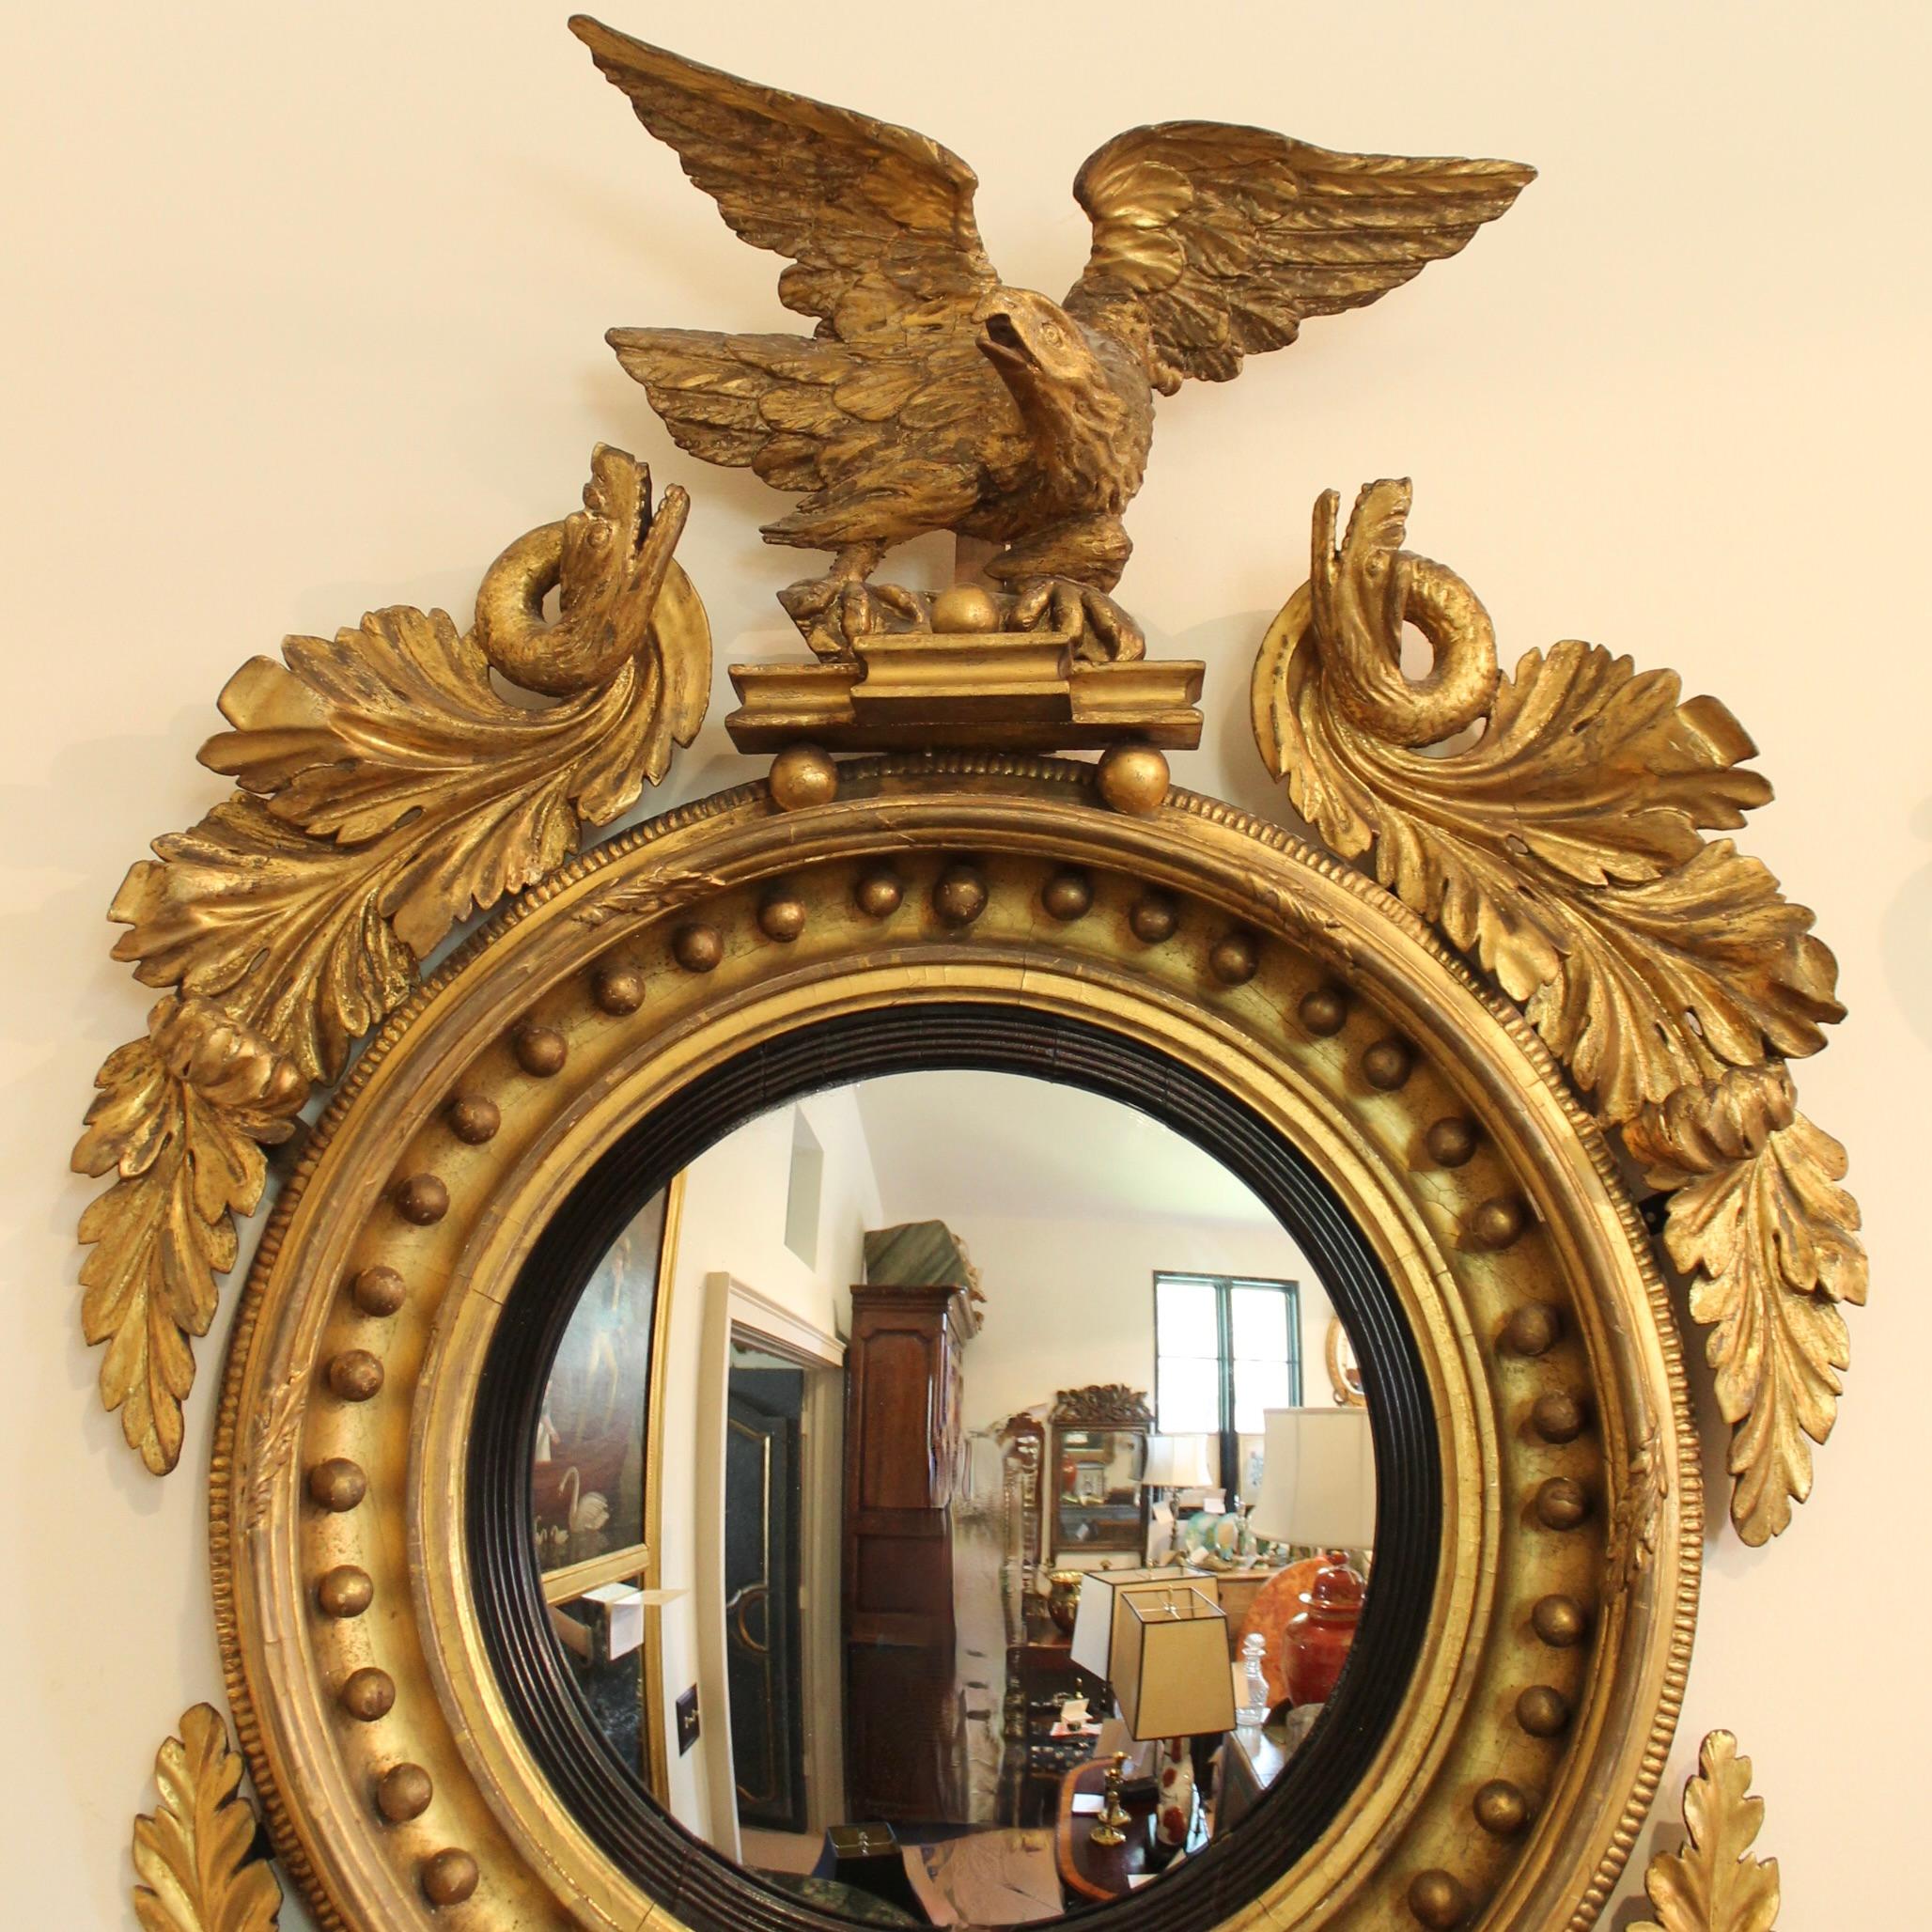 Ein großer antiker konvexer Spiegel aus vergoldetem Holz, von sicherer Hand geschnitzt, mit einem Adler auf der Oberseite und Wirbeln aus geschnitztem und vergoldetem Akanthuslaub an den Seiten, wobei sich die obersten in fantastische Seeschlangen